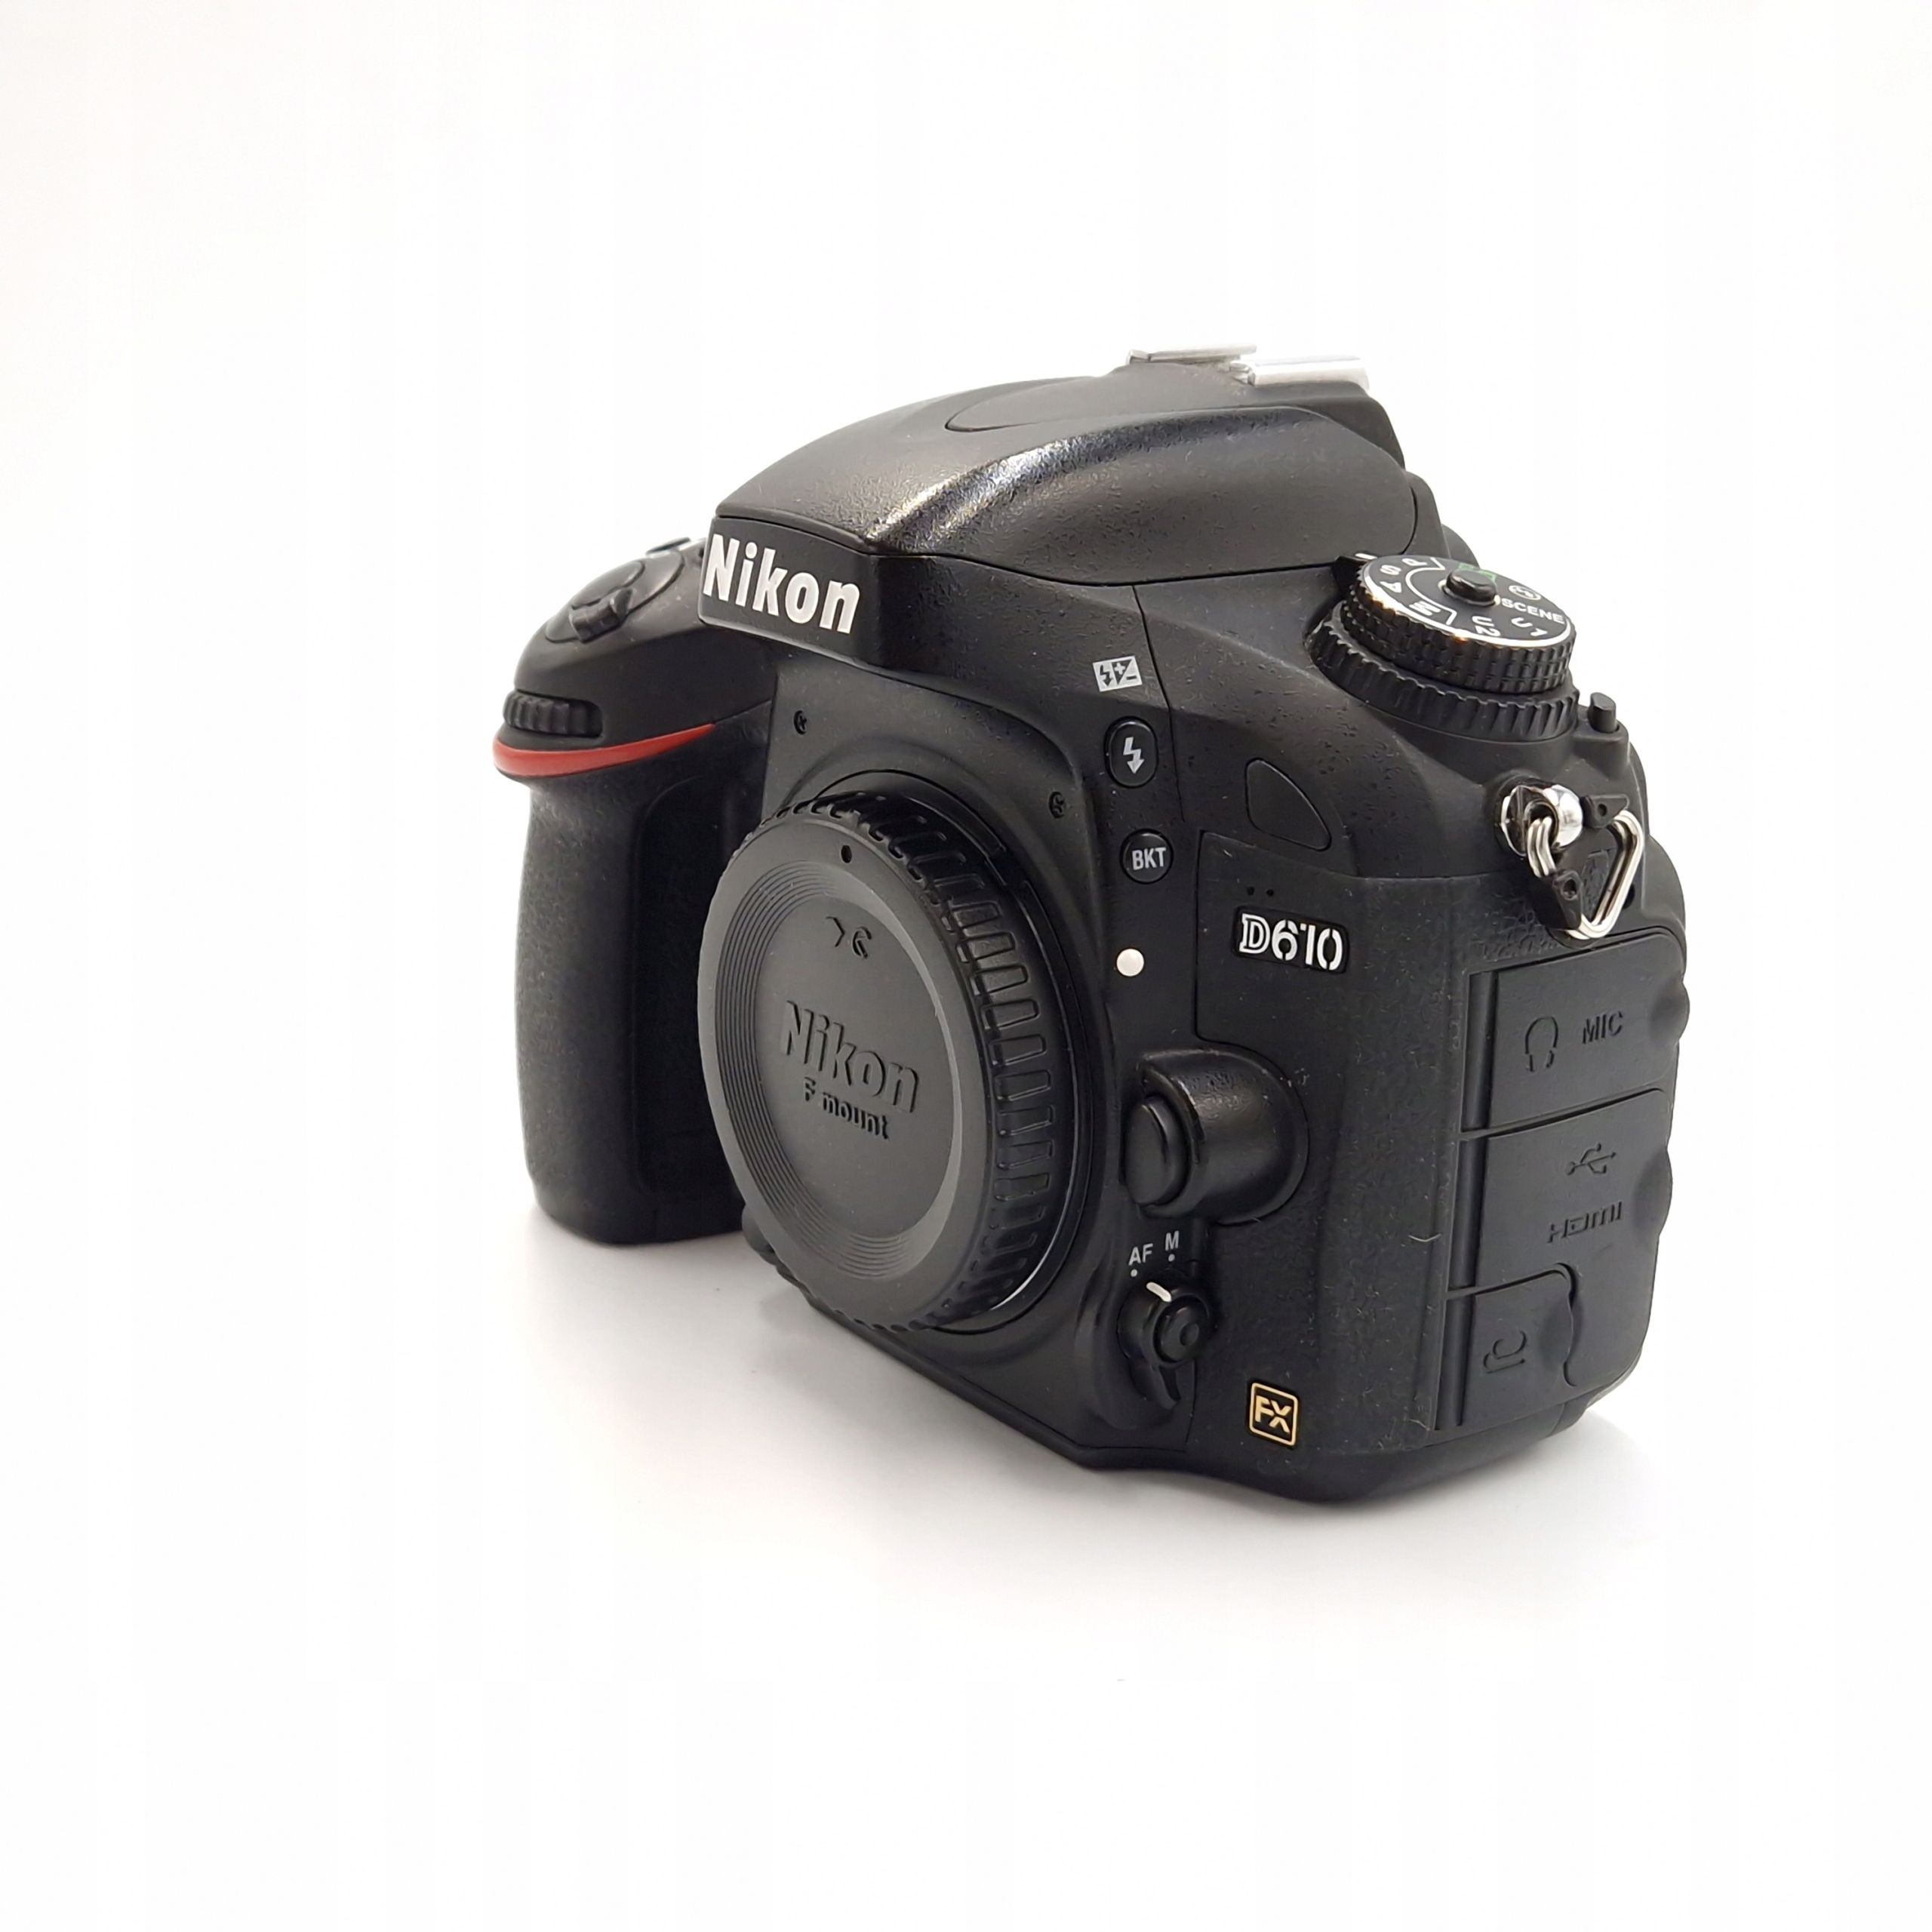 Lustrzanka Nikon D610 korpus 57985 zdjęć bardzo zadbany egzemplarz !